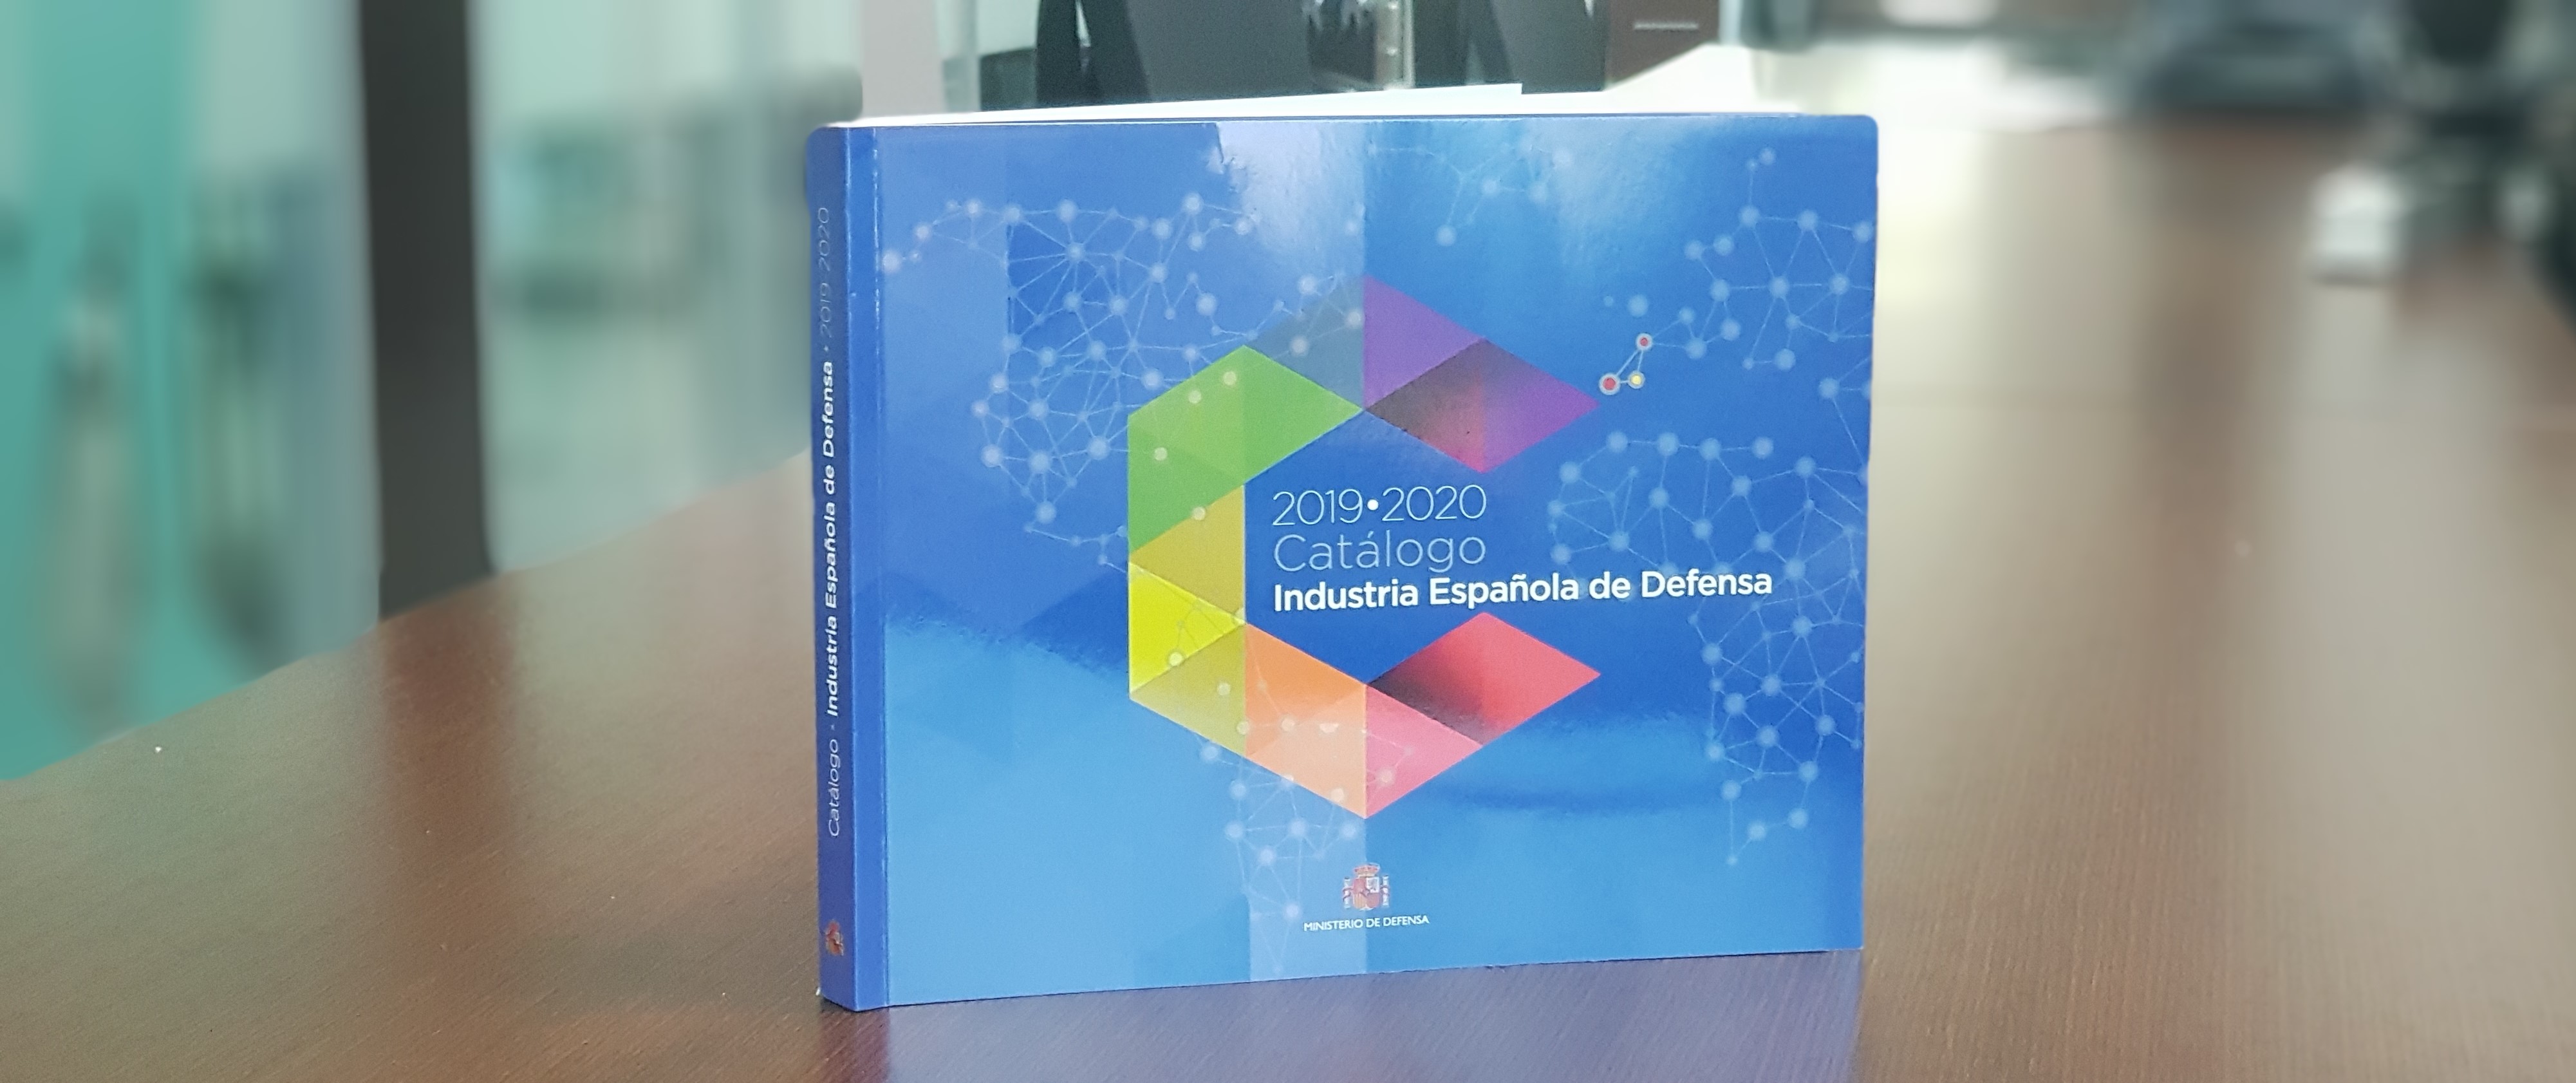 Grupo ICA renueva su permanencia en el Catálogo de la Industria Española de Defensa 2019-2020